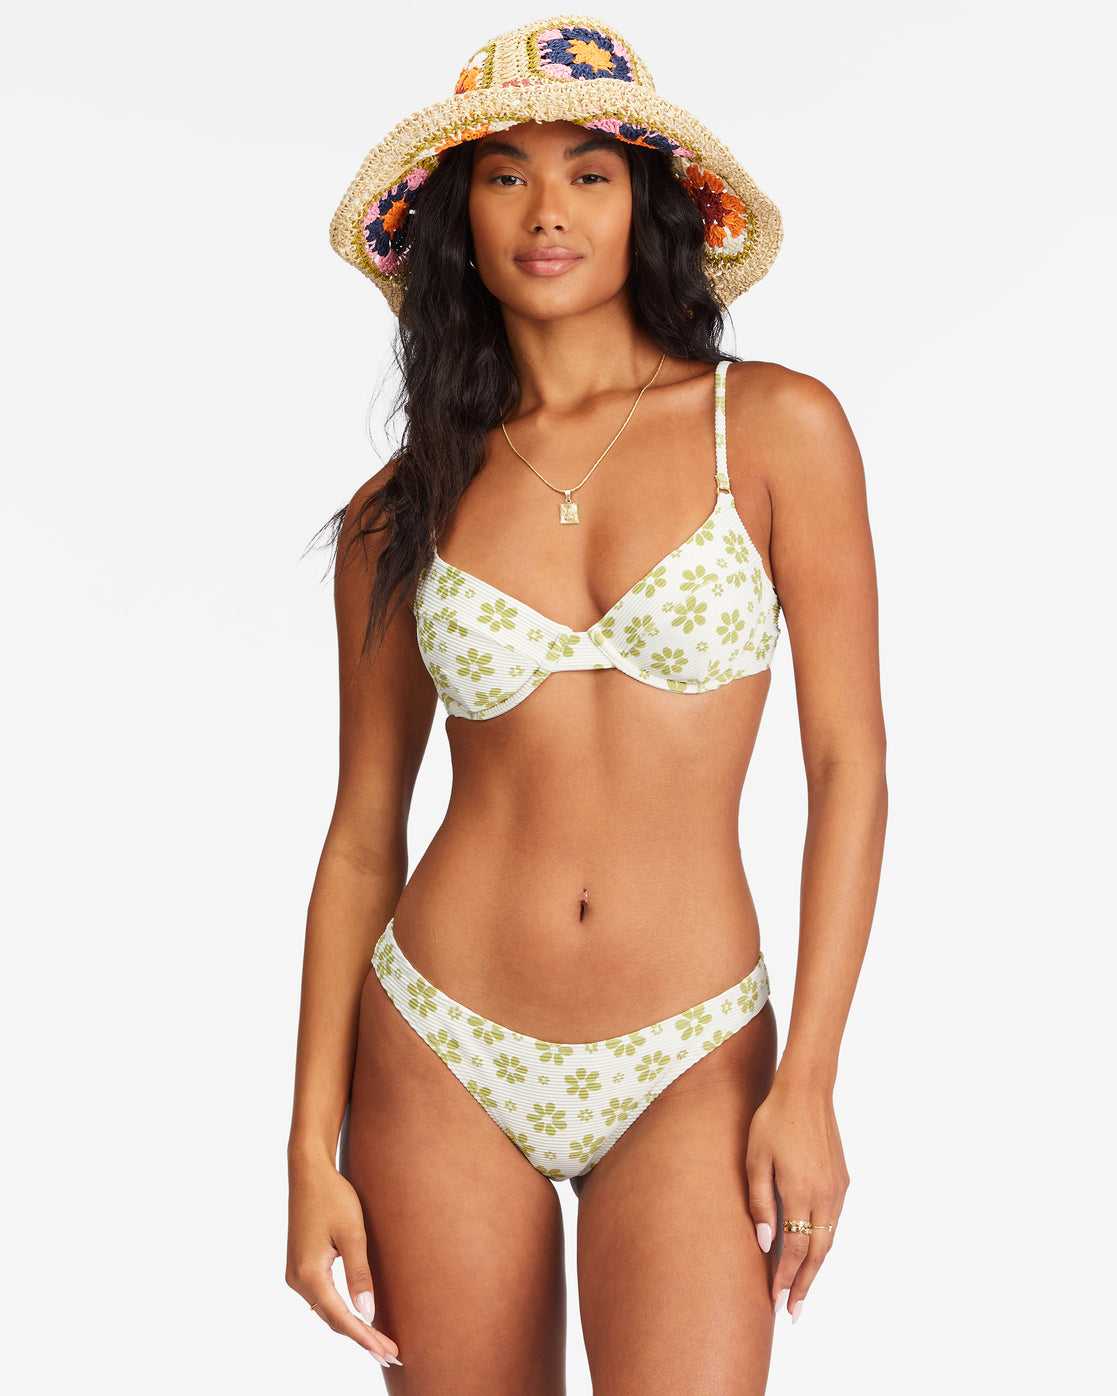 Daisy Chain Tropic Bikini Bottoms - ABJX400611